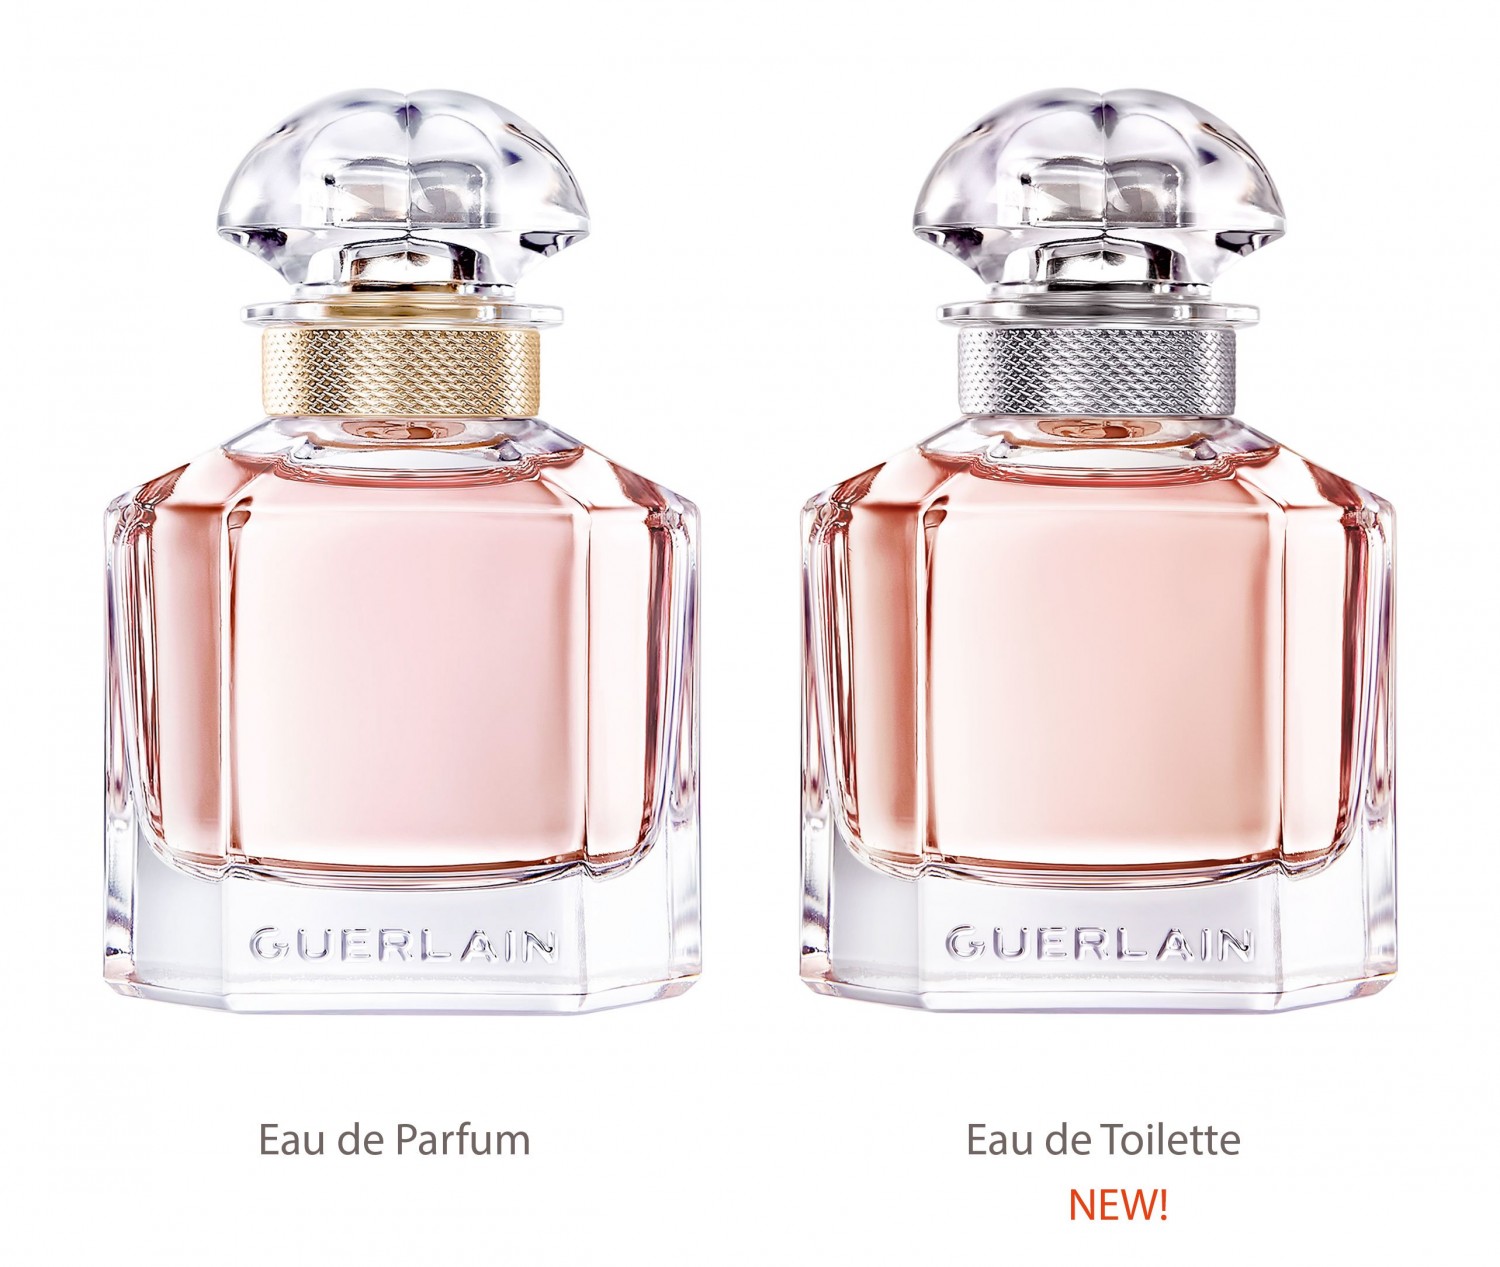 New Mon Guerlain Eau de Toilette Perfume